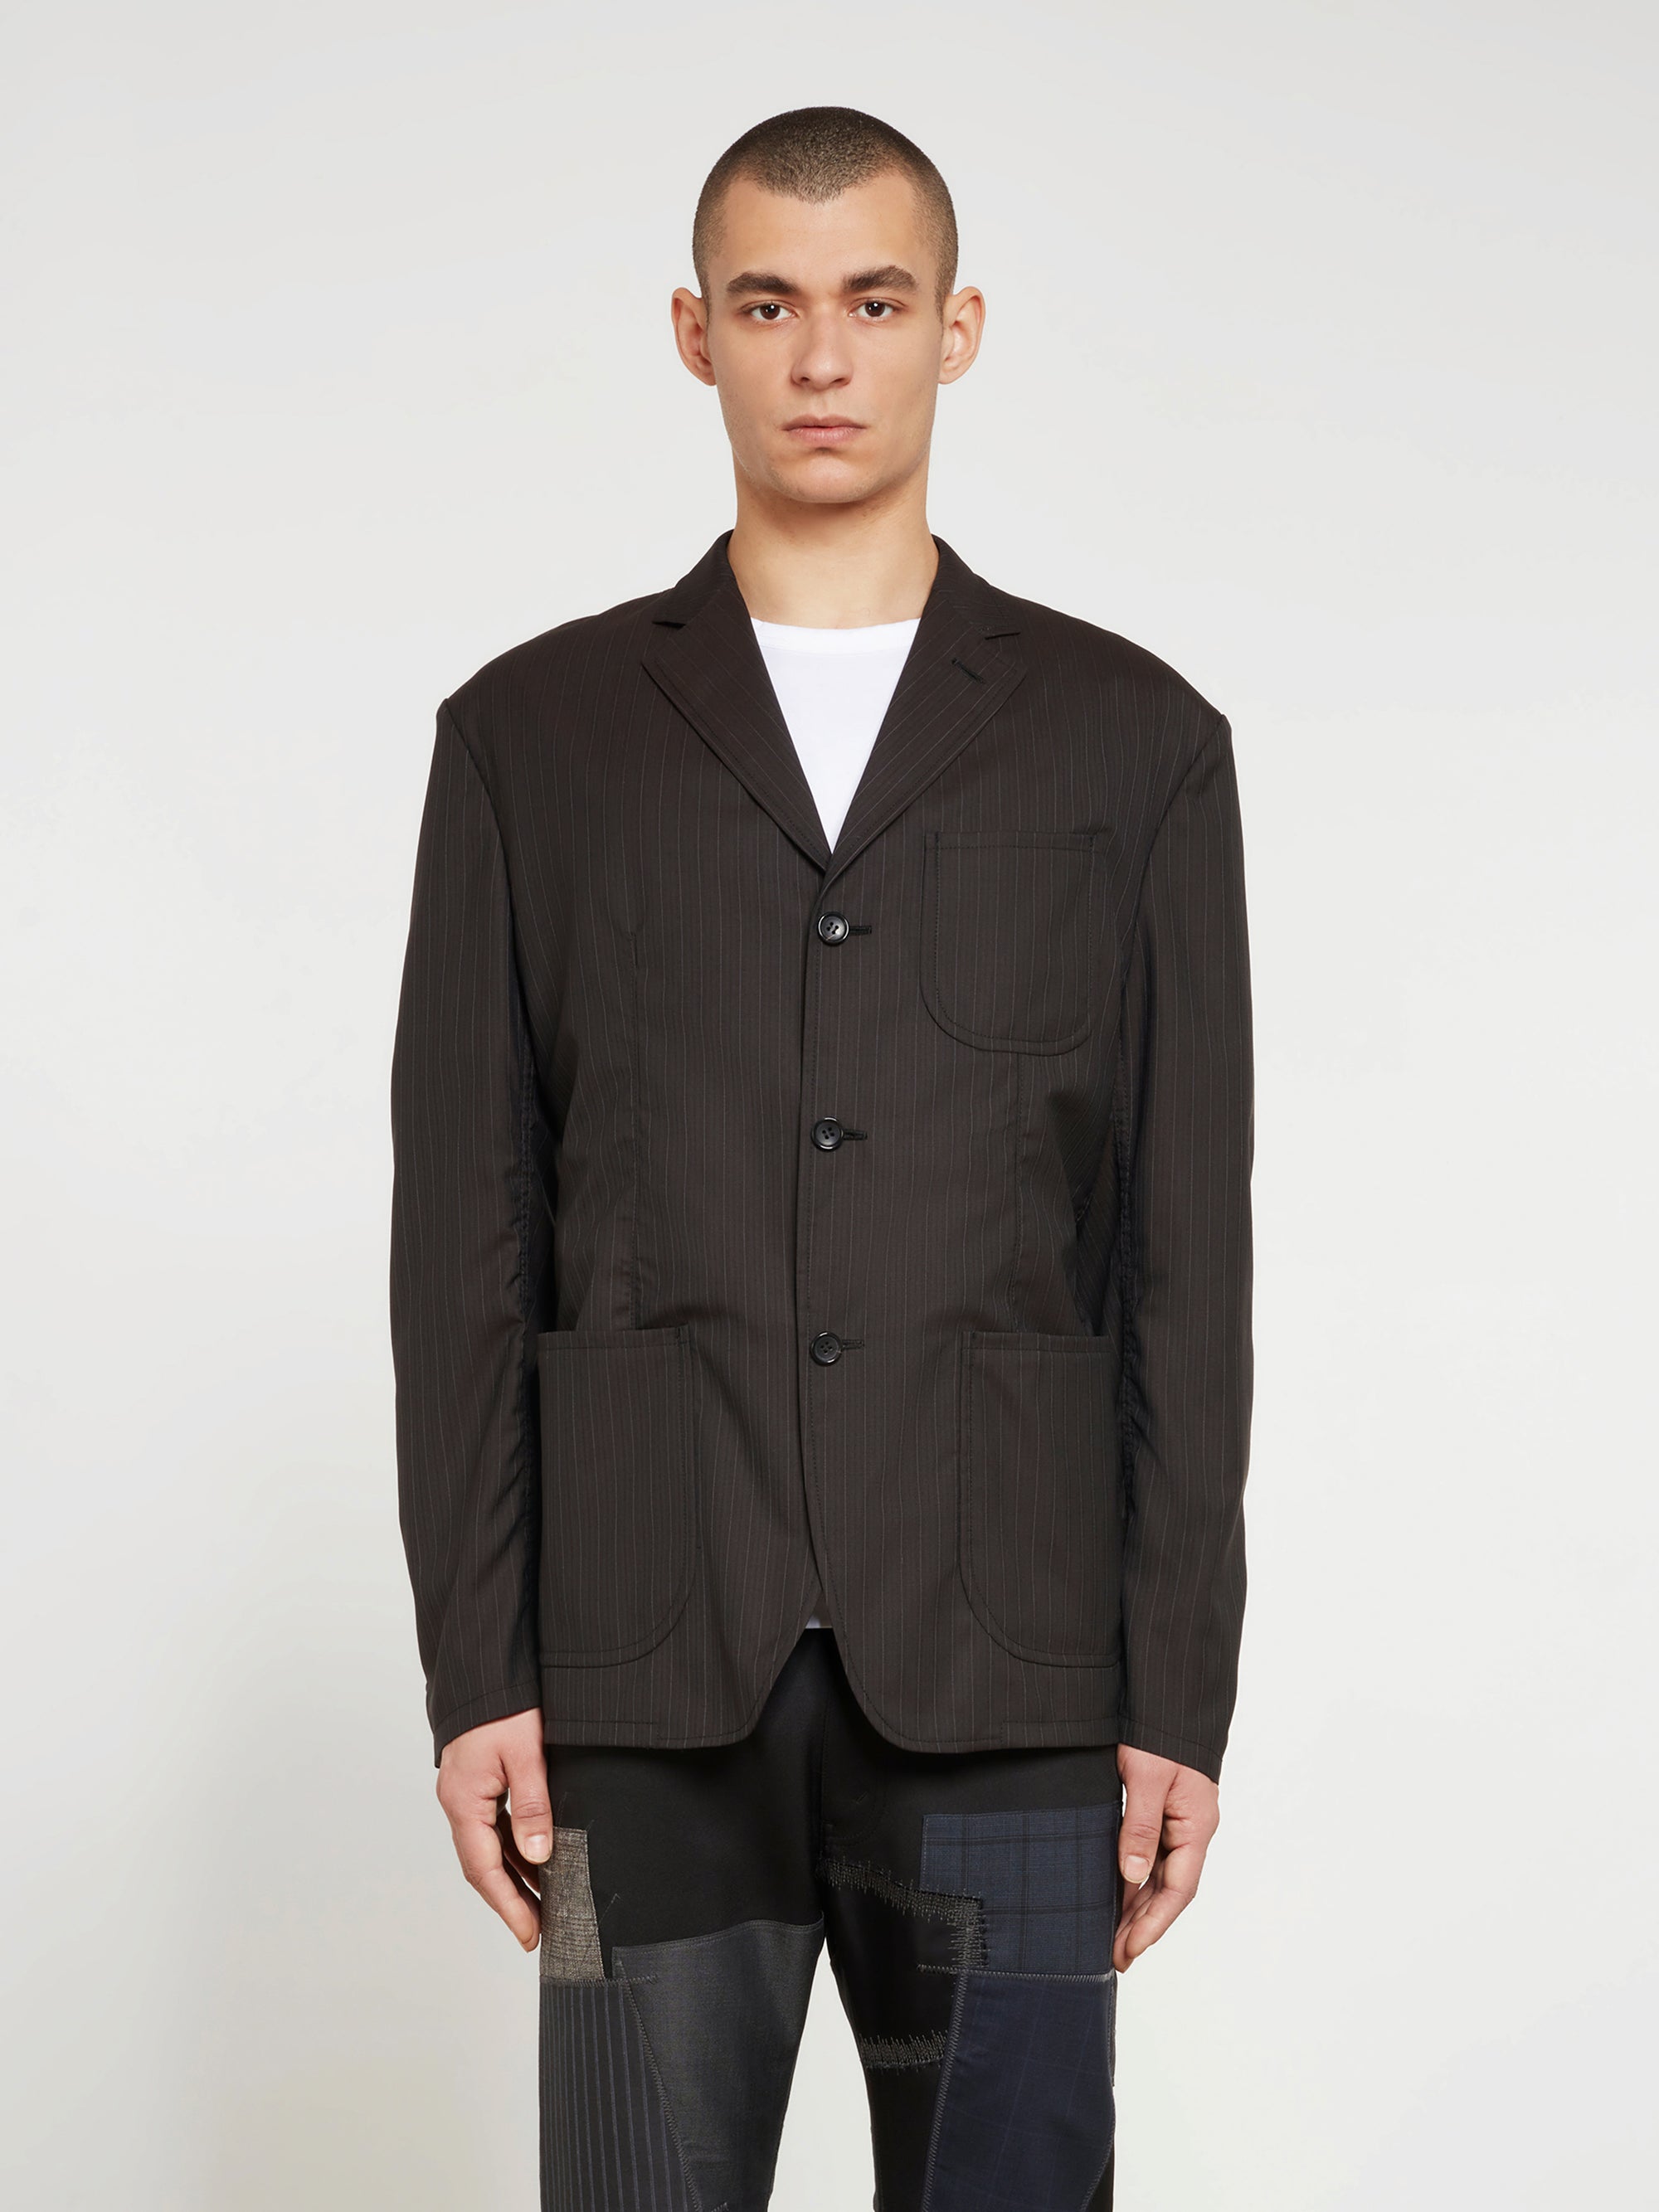 Junya Watanabe MAN - Andy Warhol Wool Silk Stripe Jacket - (Black/Brown) view 1